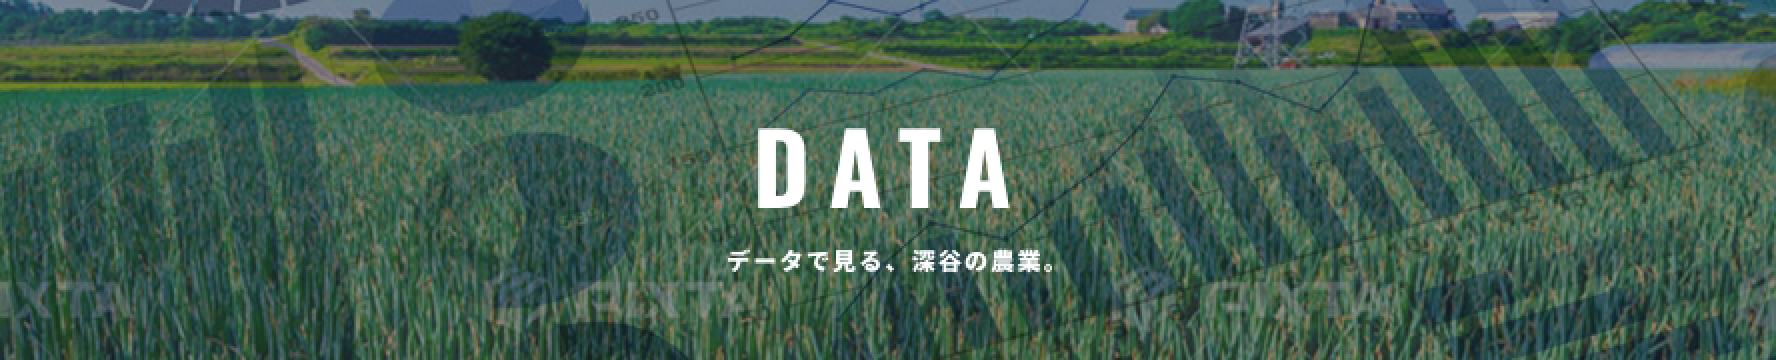 農業データ